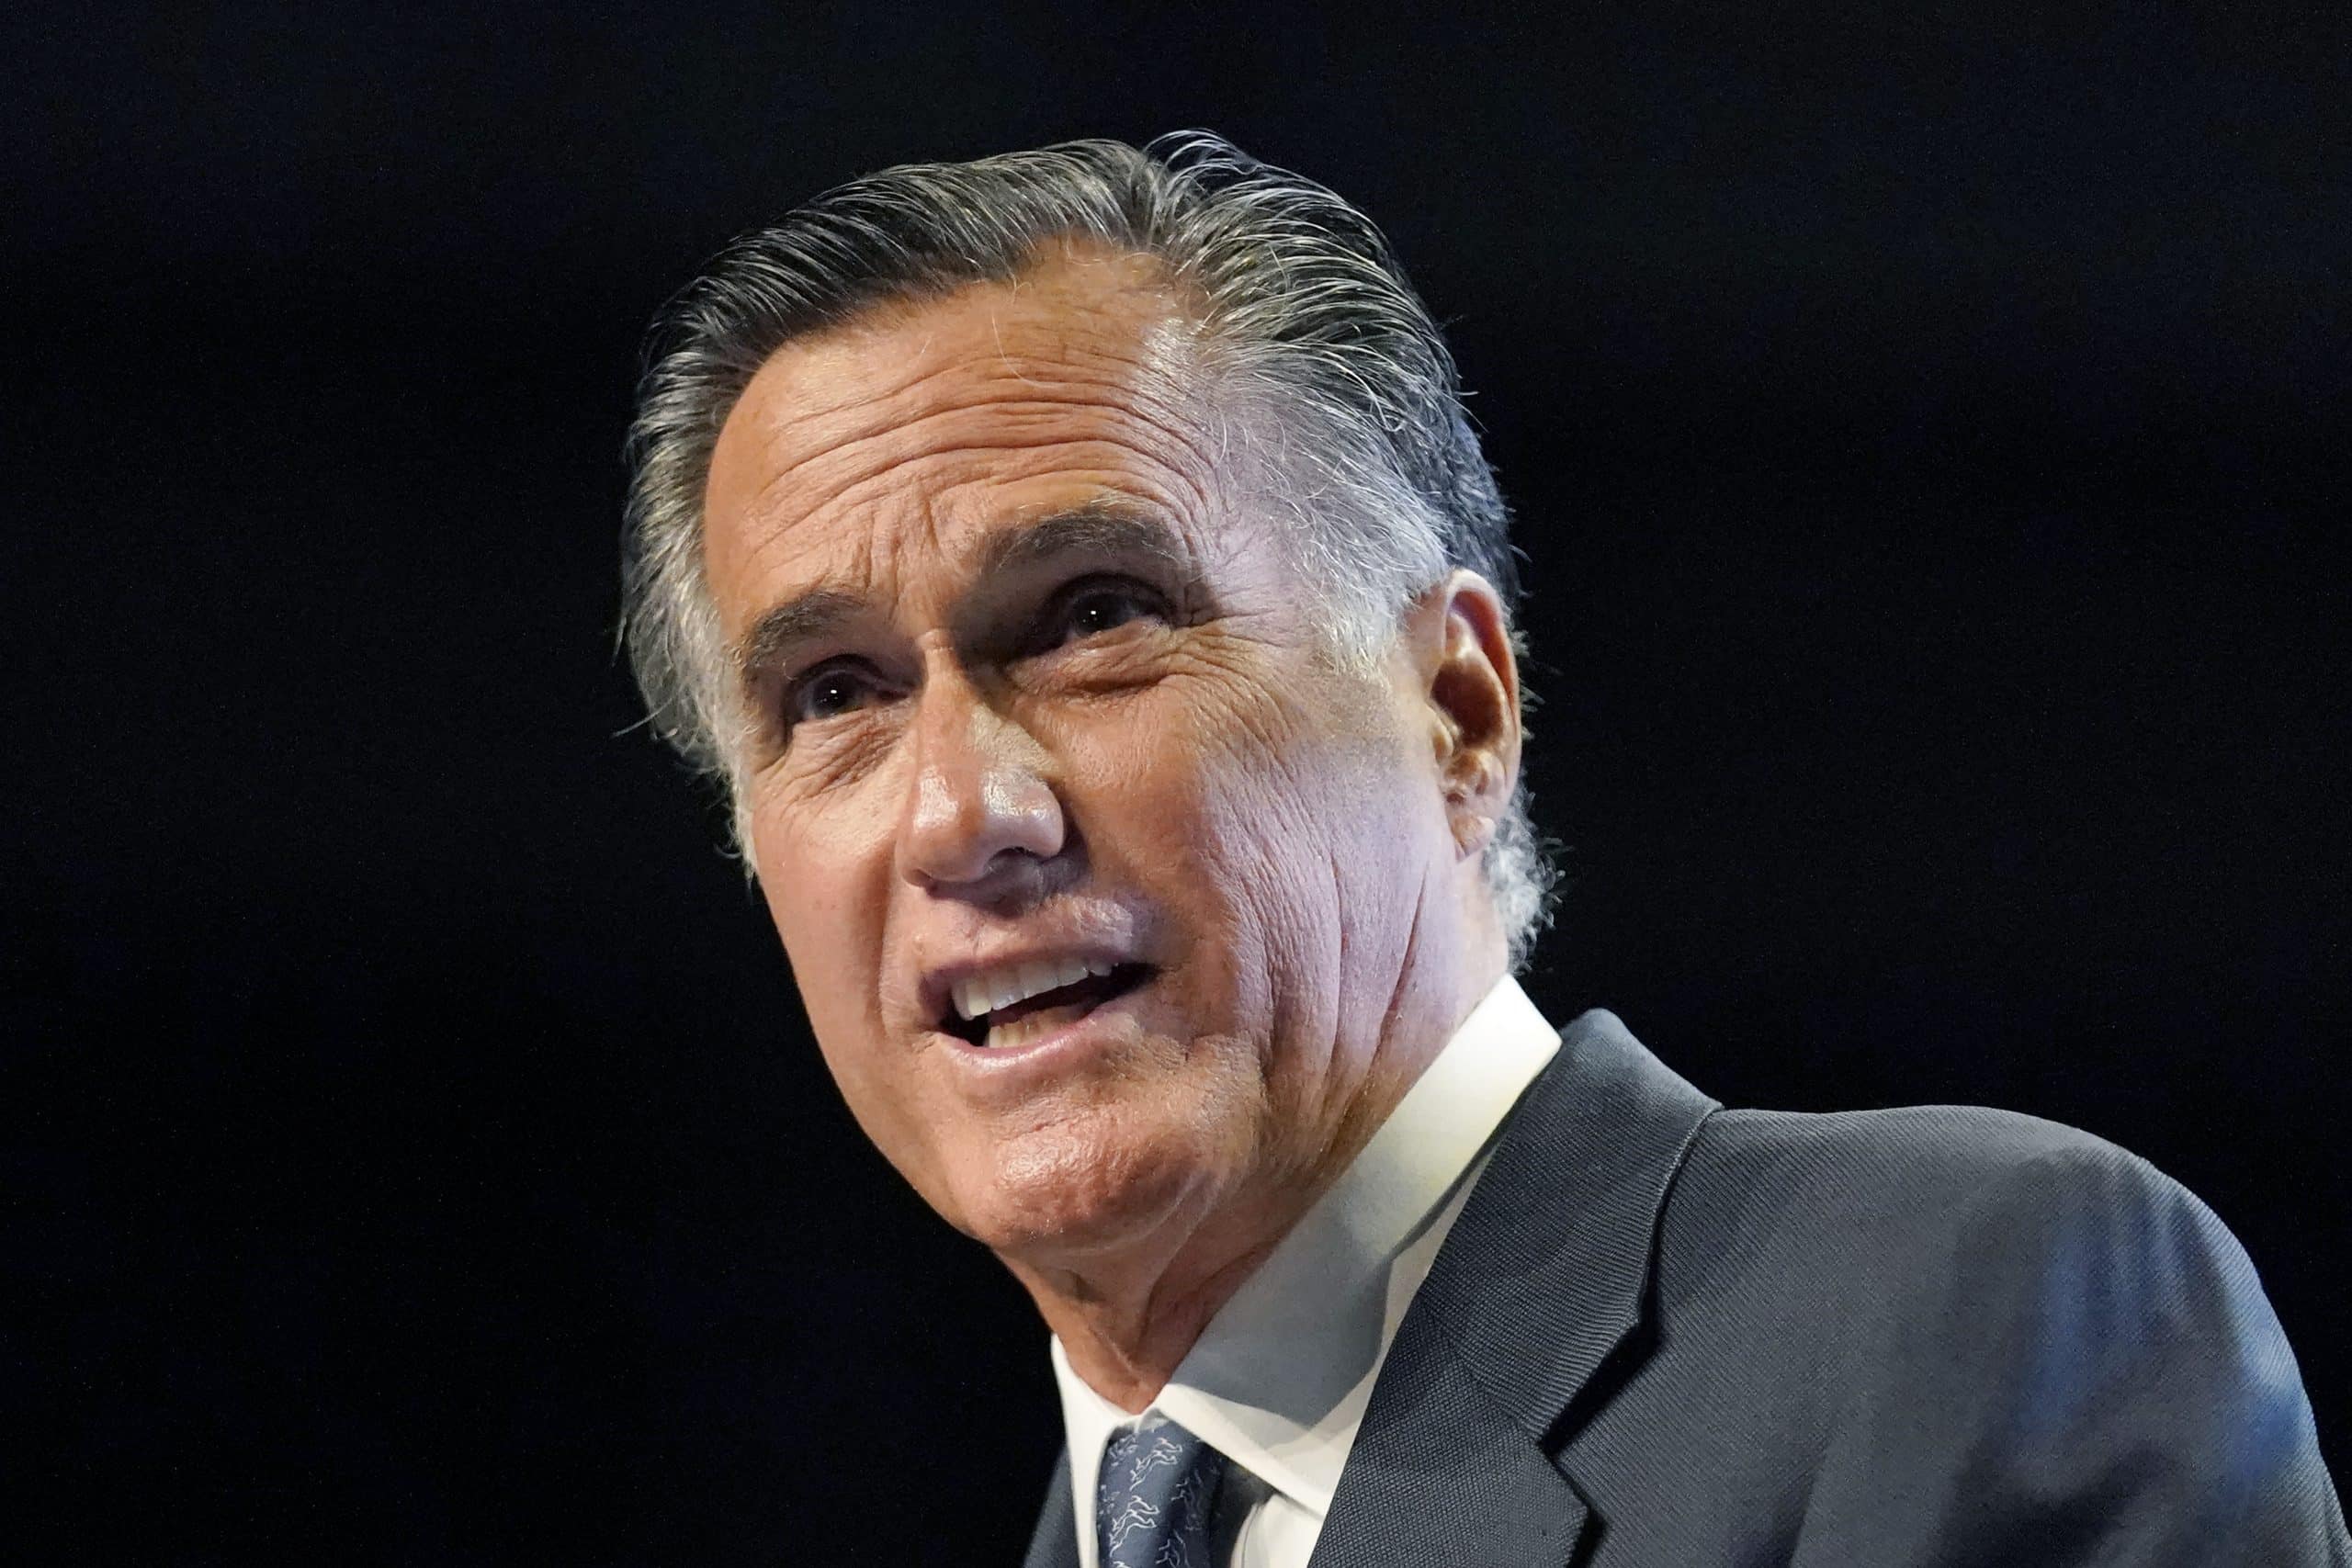 Mitt Romney Booed at Utah GOP Convention for Trump
Impeachment Vote 1